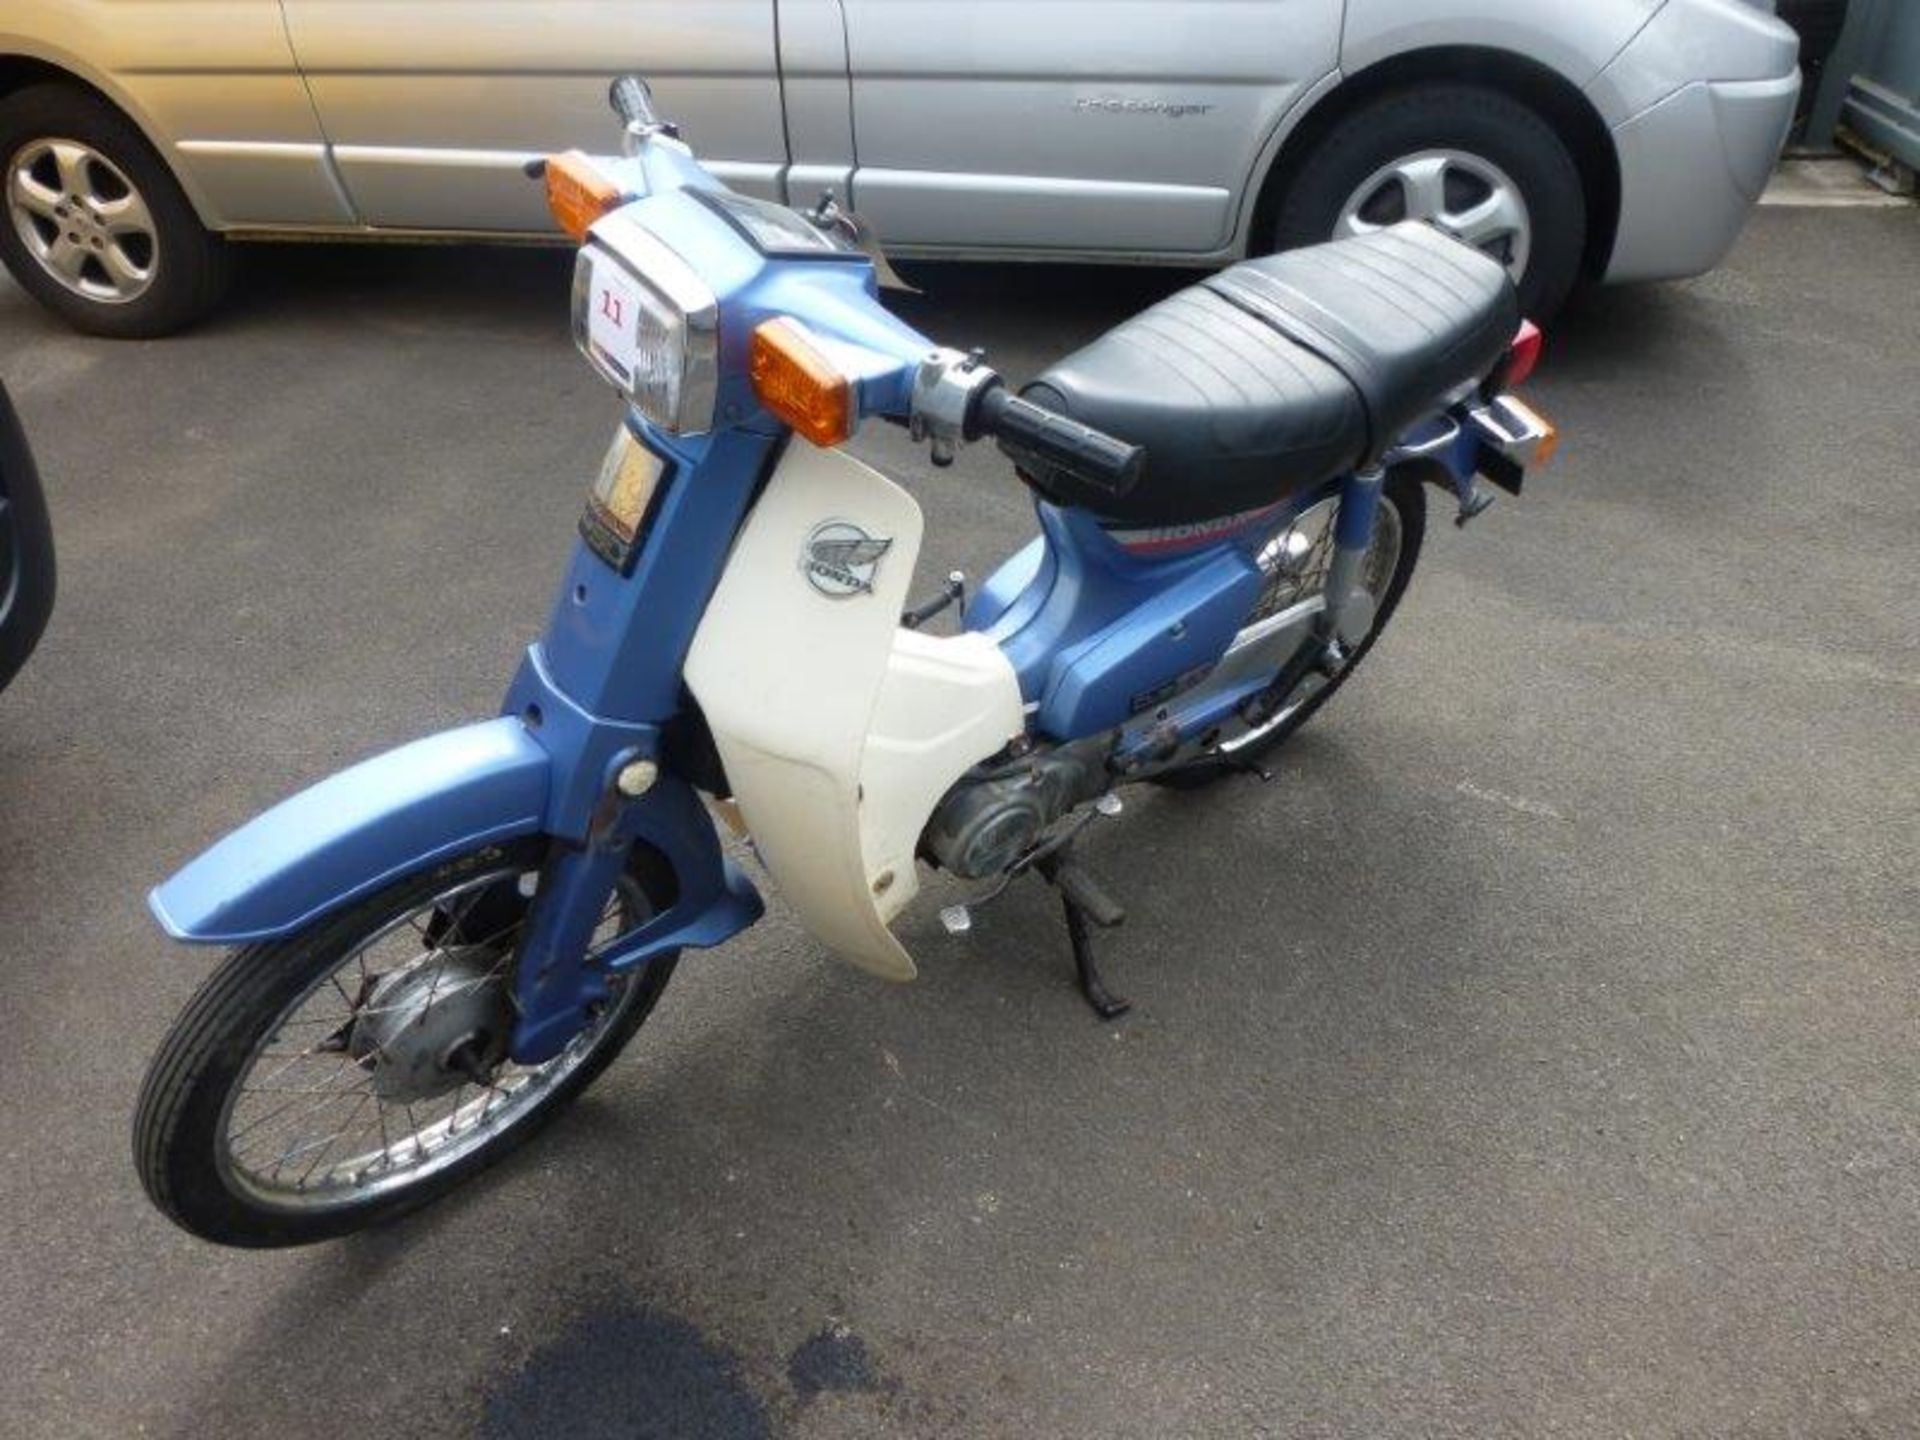 Honda C90E Step Through motorcycle, 85cc (Blue)  Registration no. E464 RUB  VIN no. HA021384798